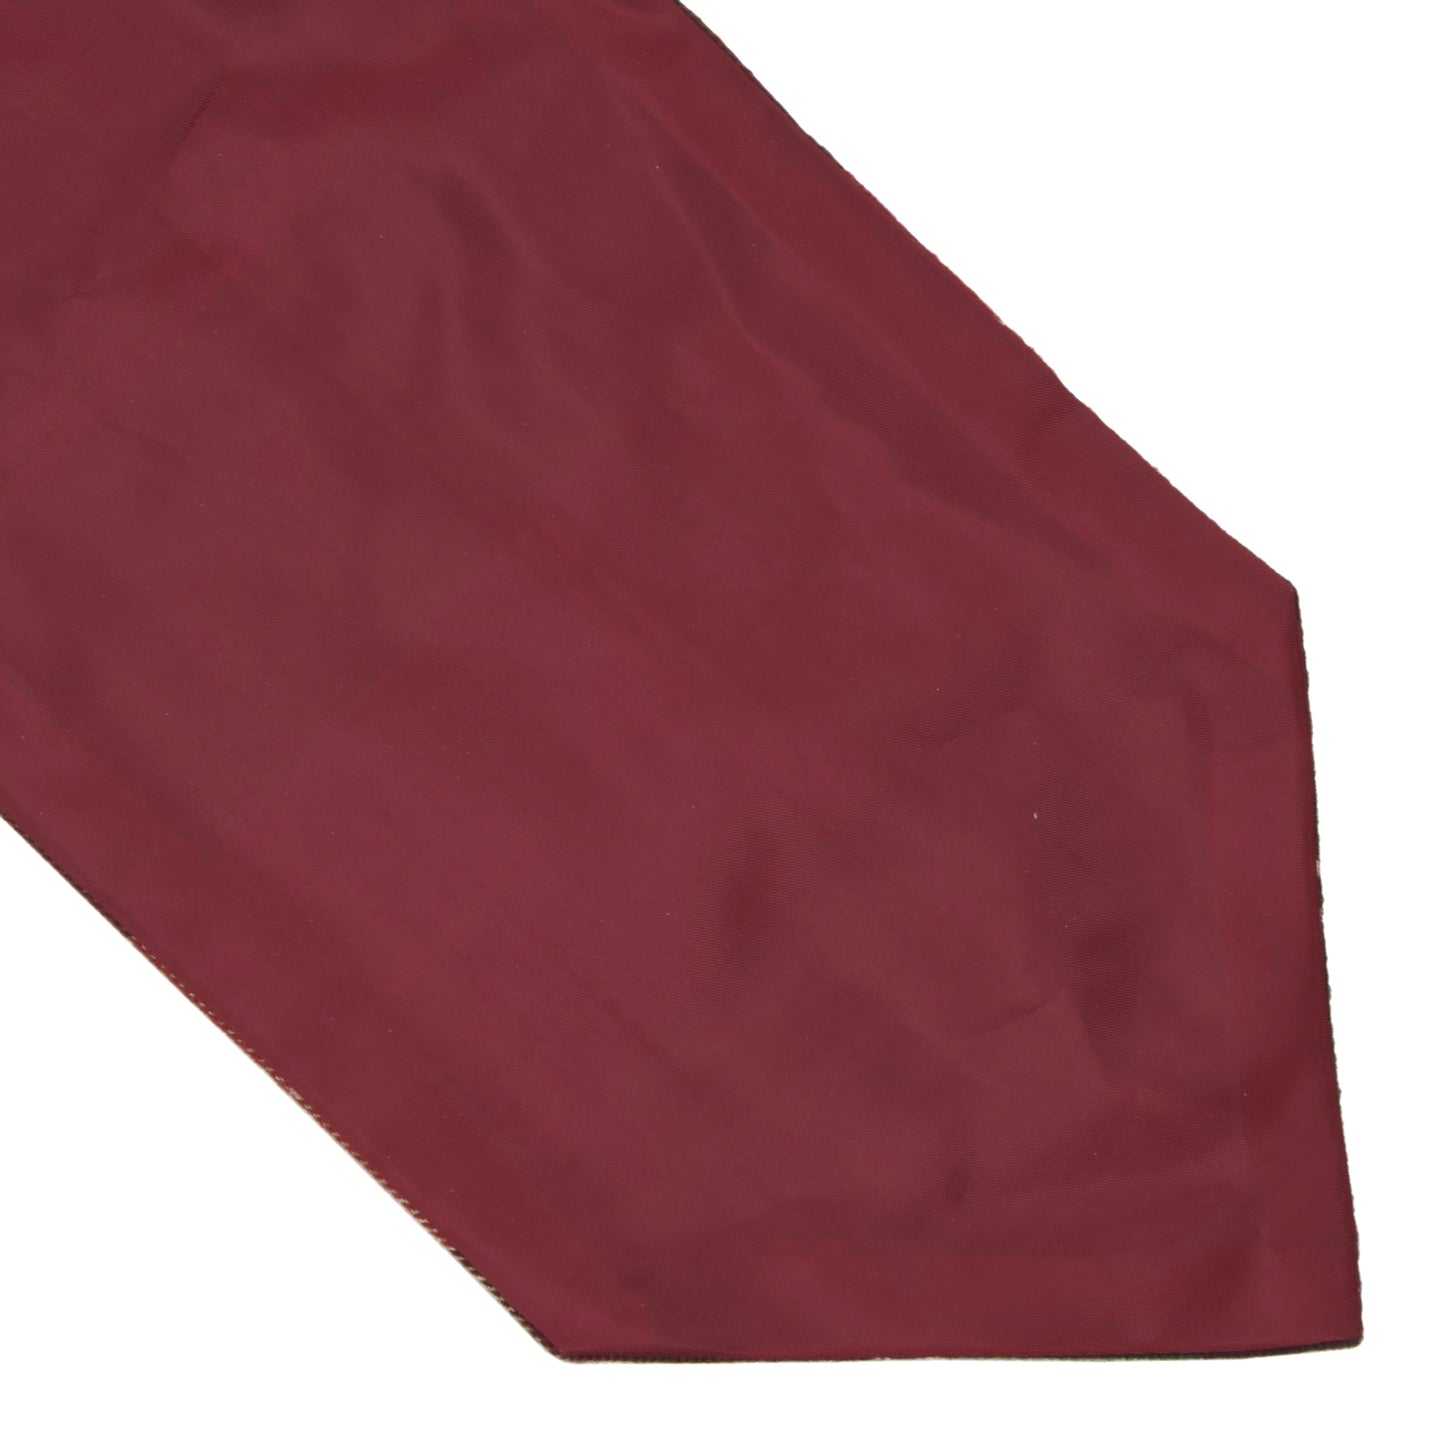 2x Silk & Cotton Ascots/Cravats Walbusch